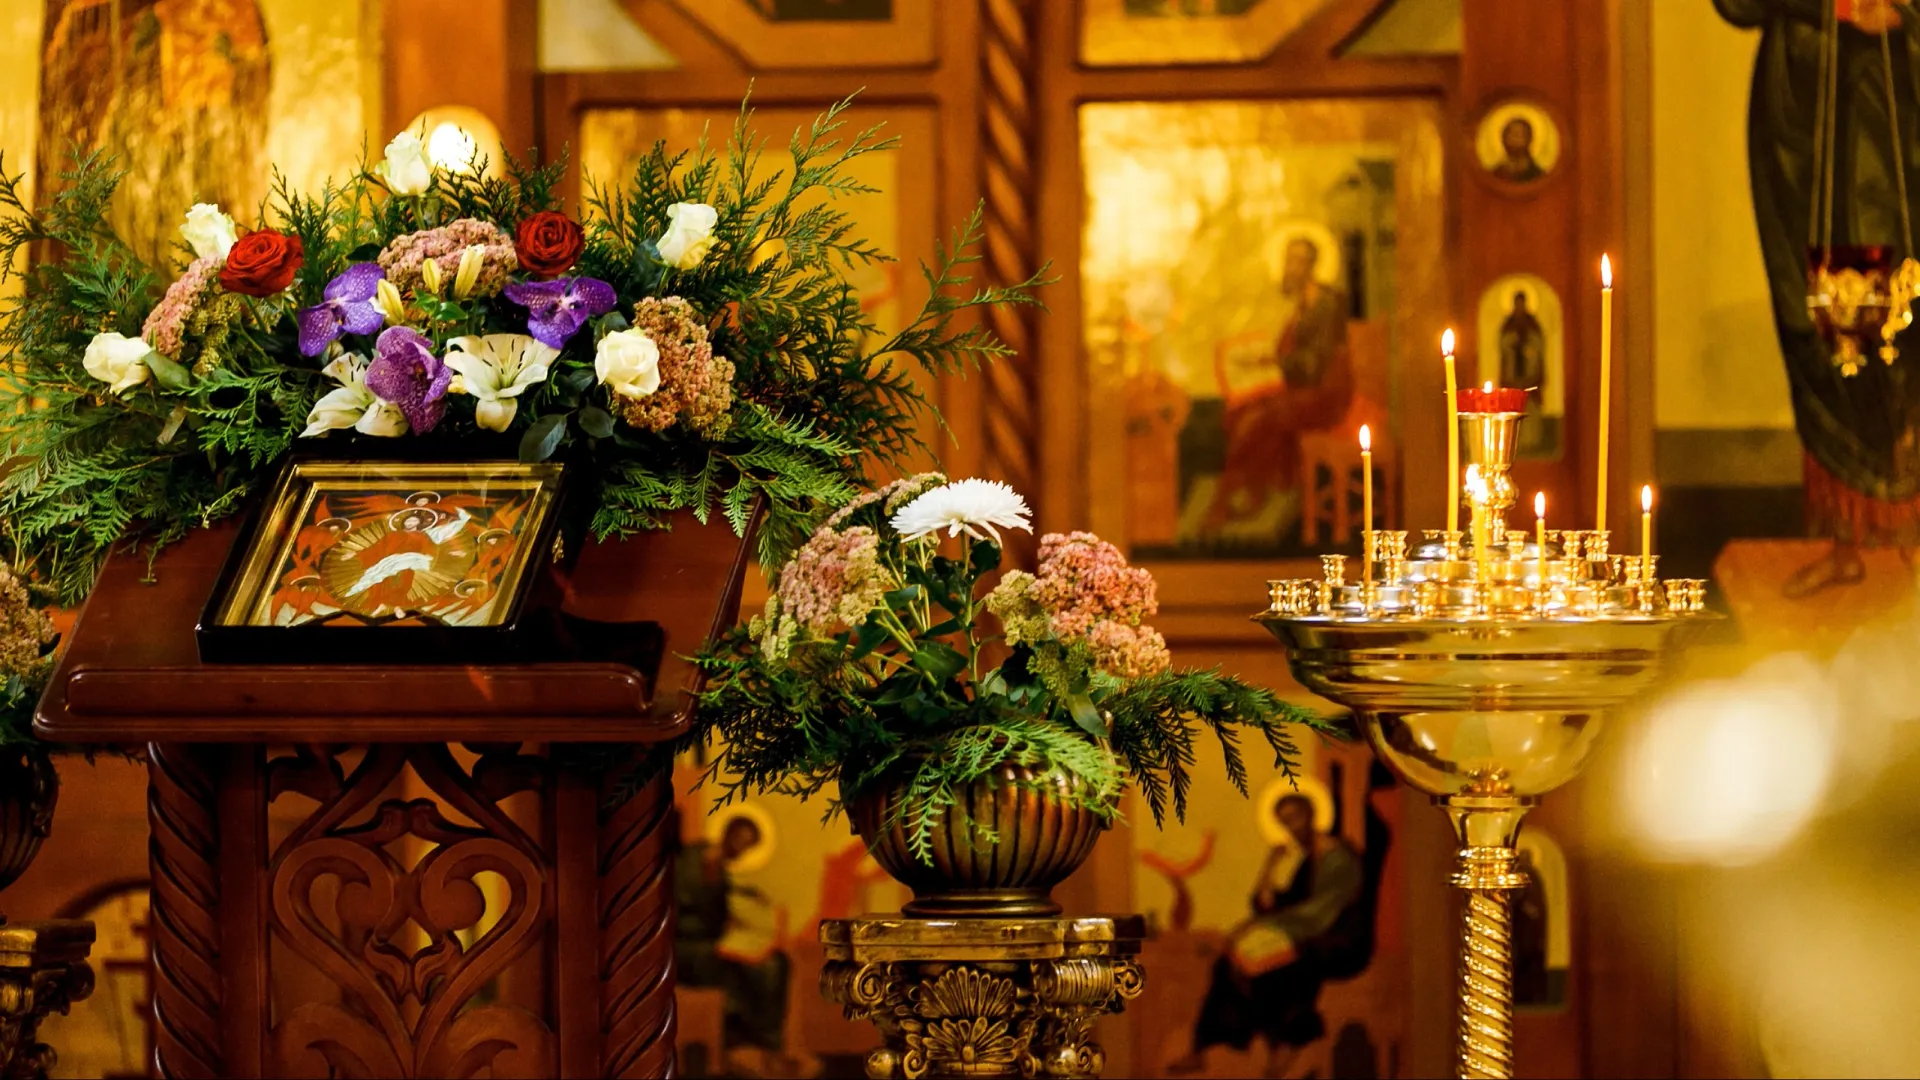 Праздничное убранство православной церкви на Рождество. Фото: Aleksandr Simonov / Shutterstock / Fotodom